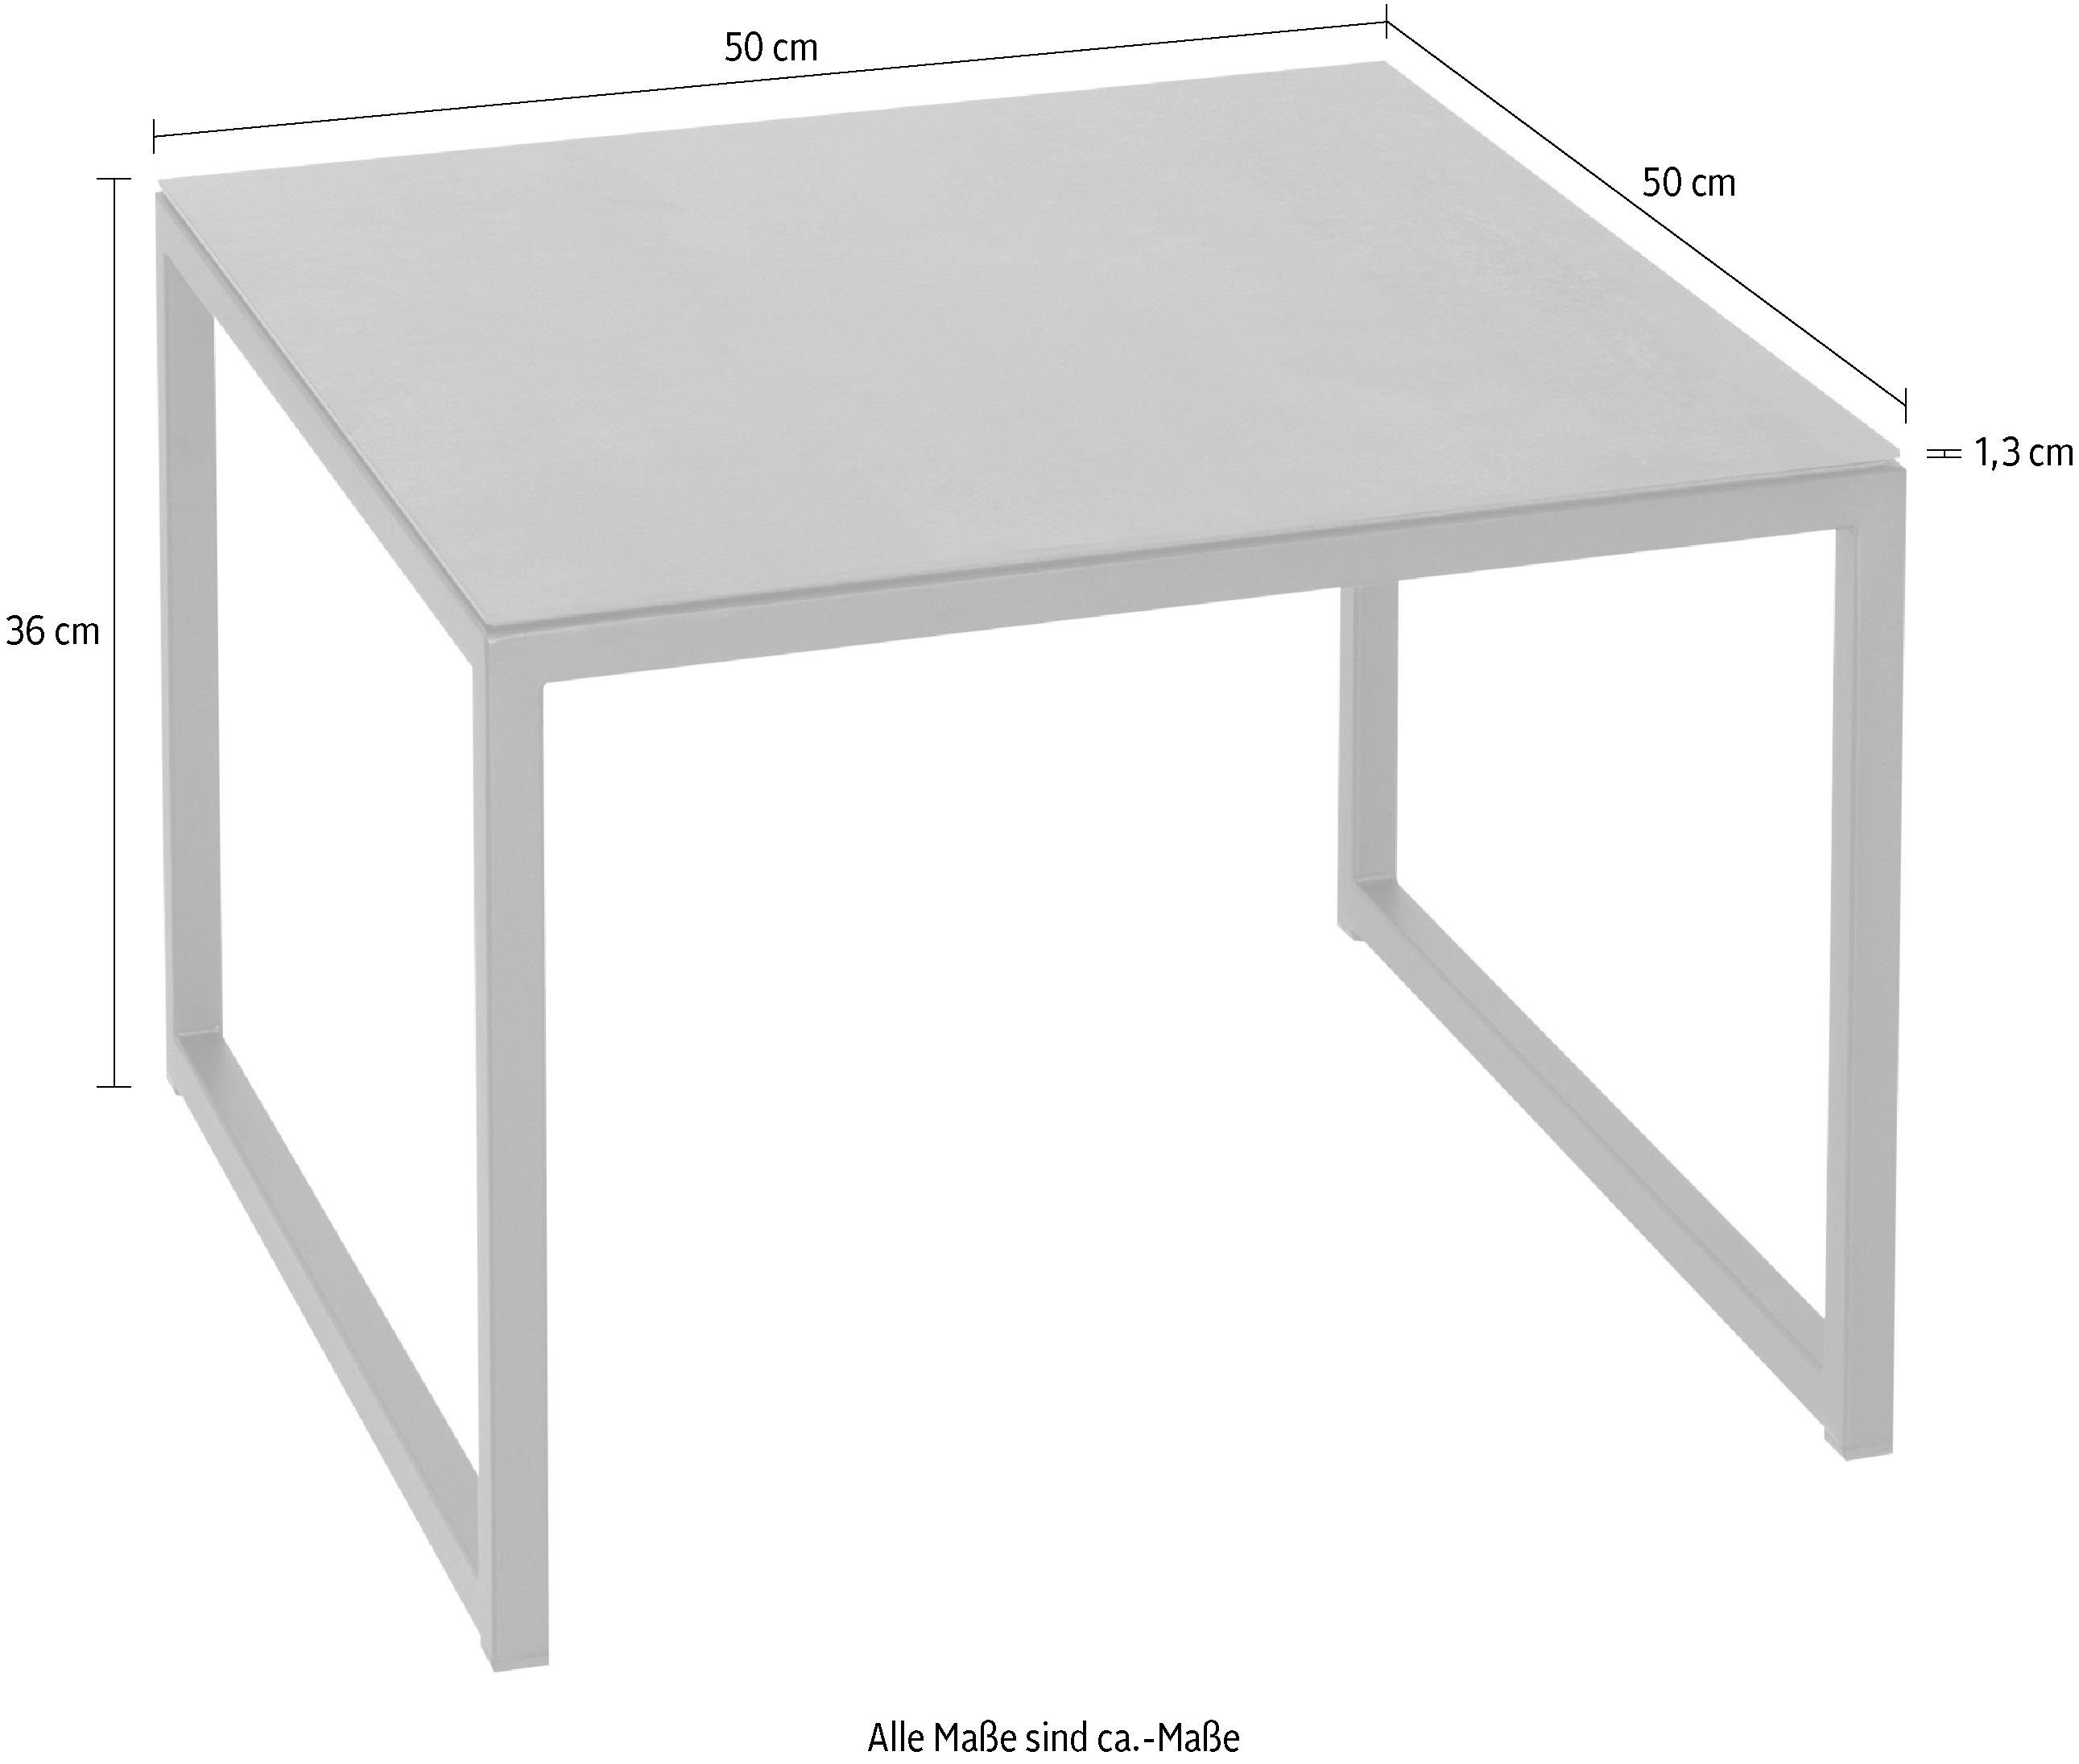 Tischplatte Henke Beistelltisch, Keramik aus Möbel hochwertiger